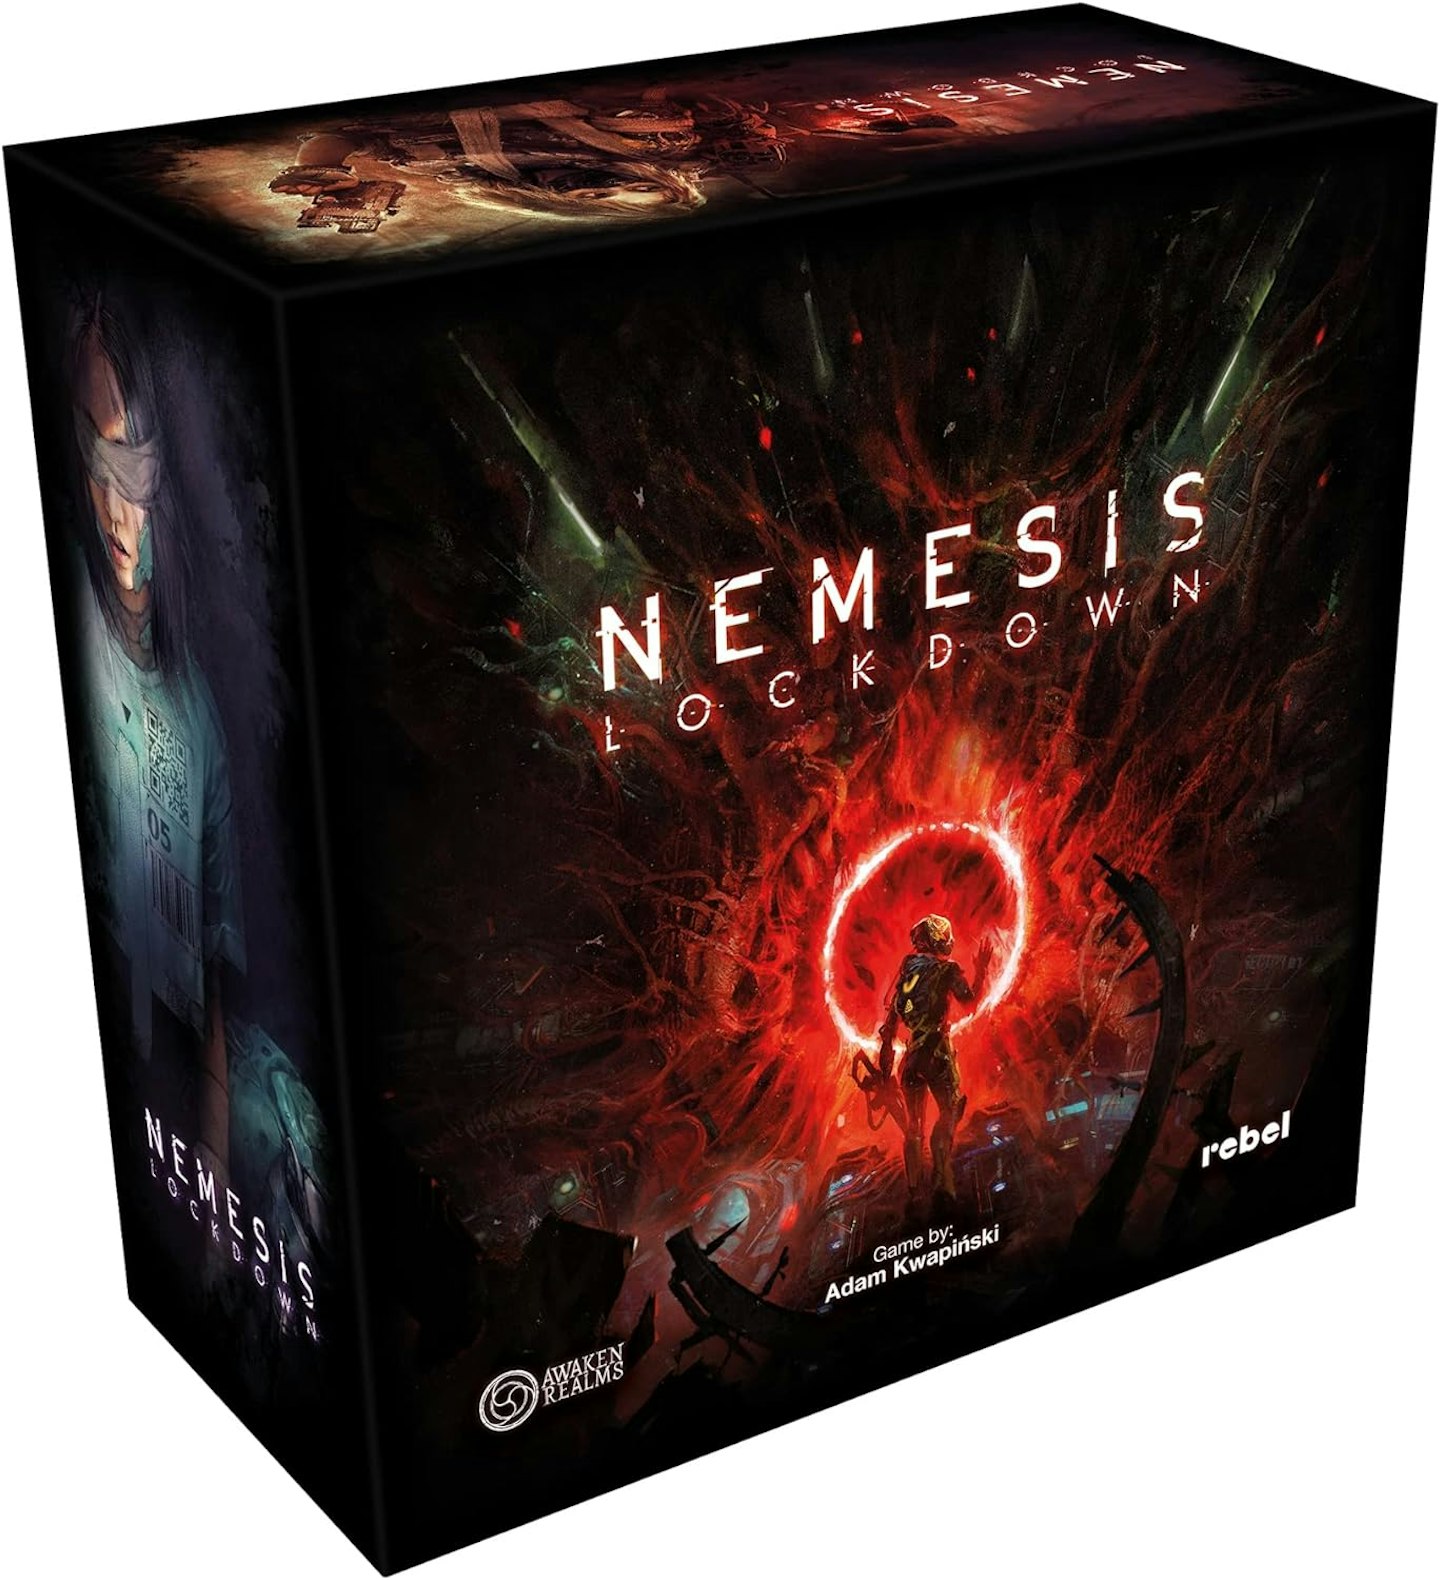 Nemesis: Lockdown game